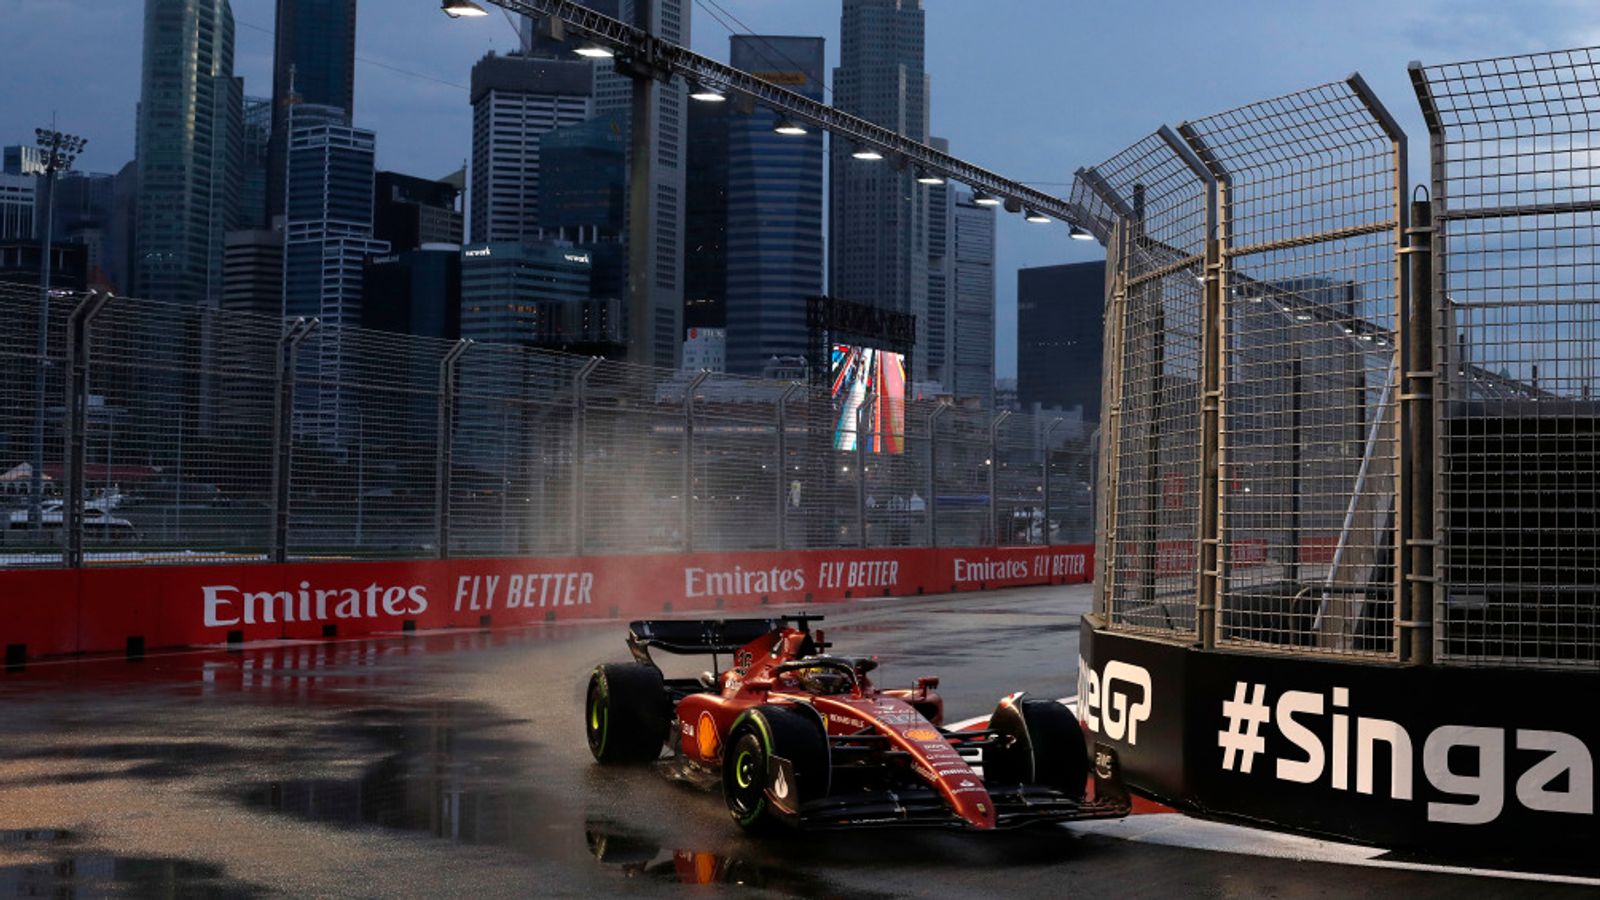 GP de Singapur: Charles Leclerc es el más rápido para Ferrari en la Práctica 3 sobre mojado antes de la clasificación